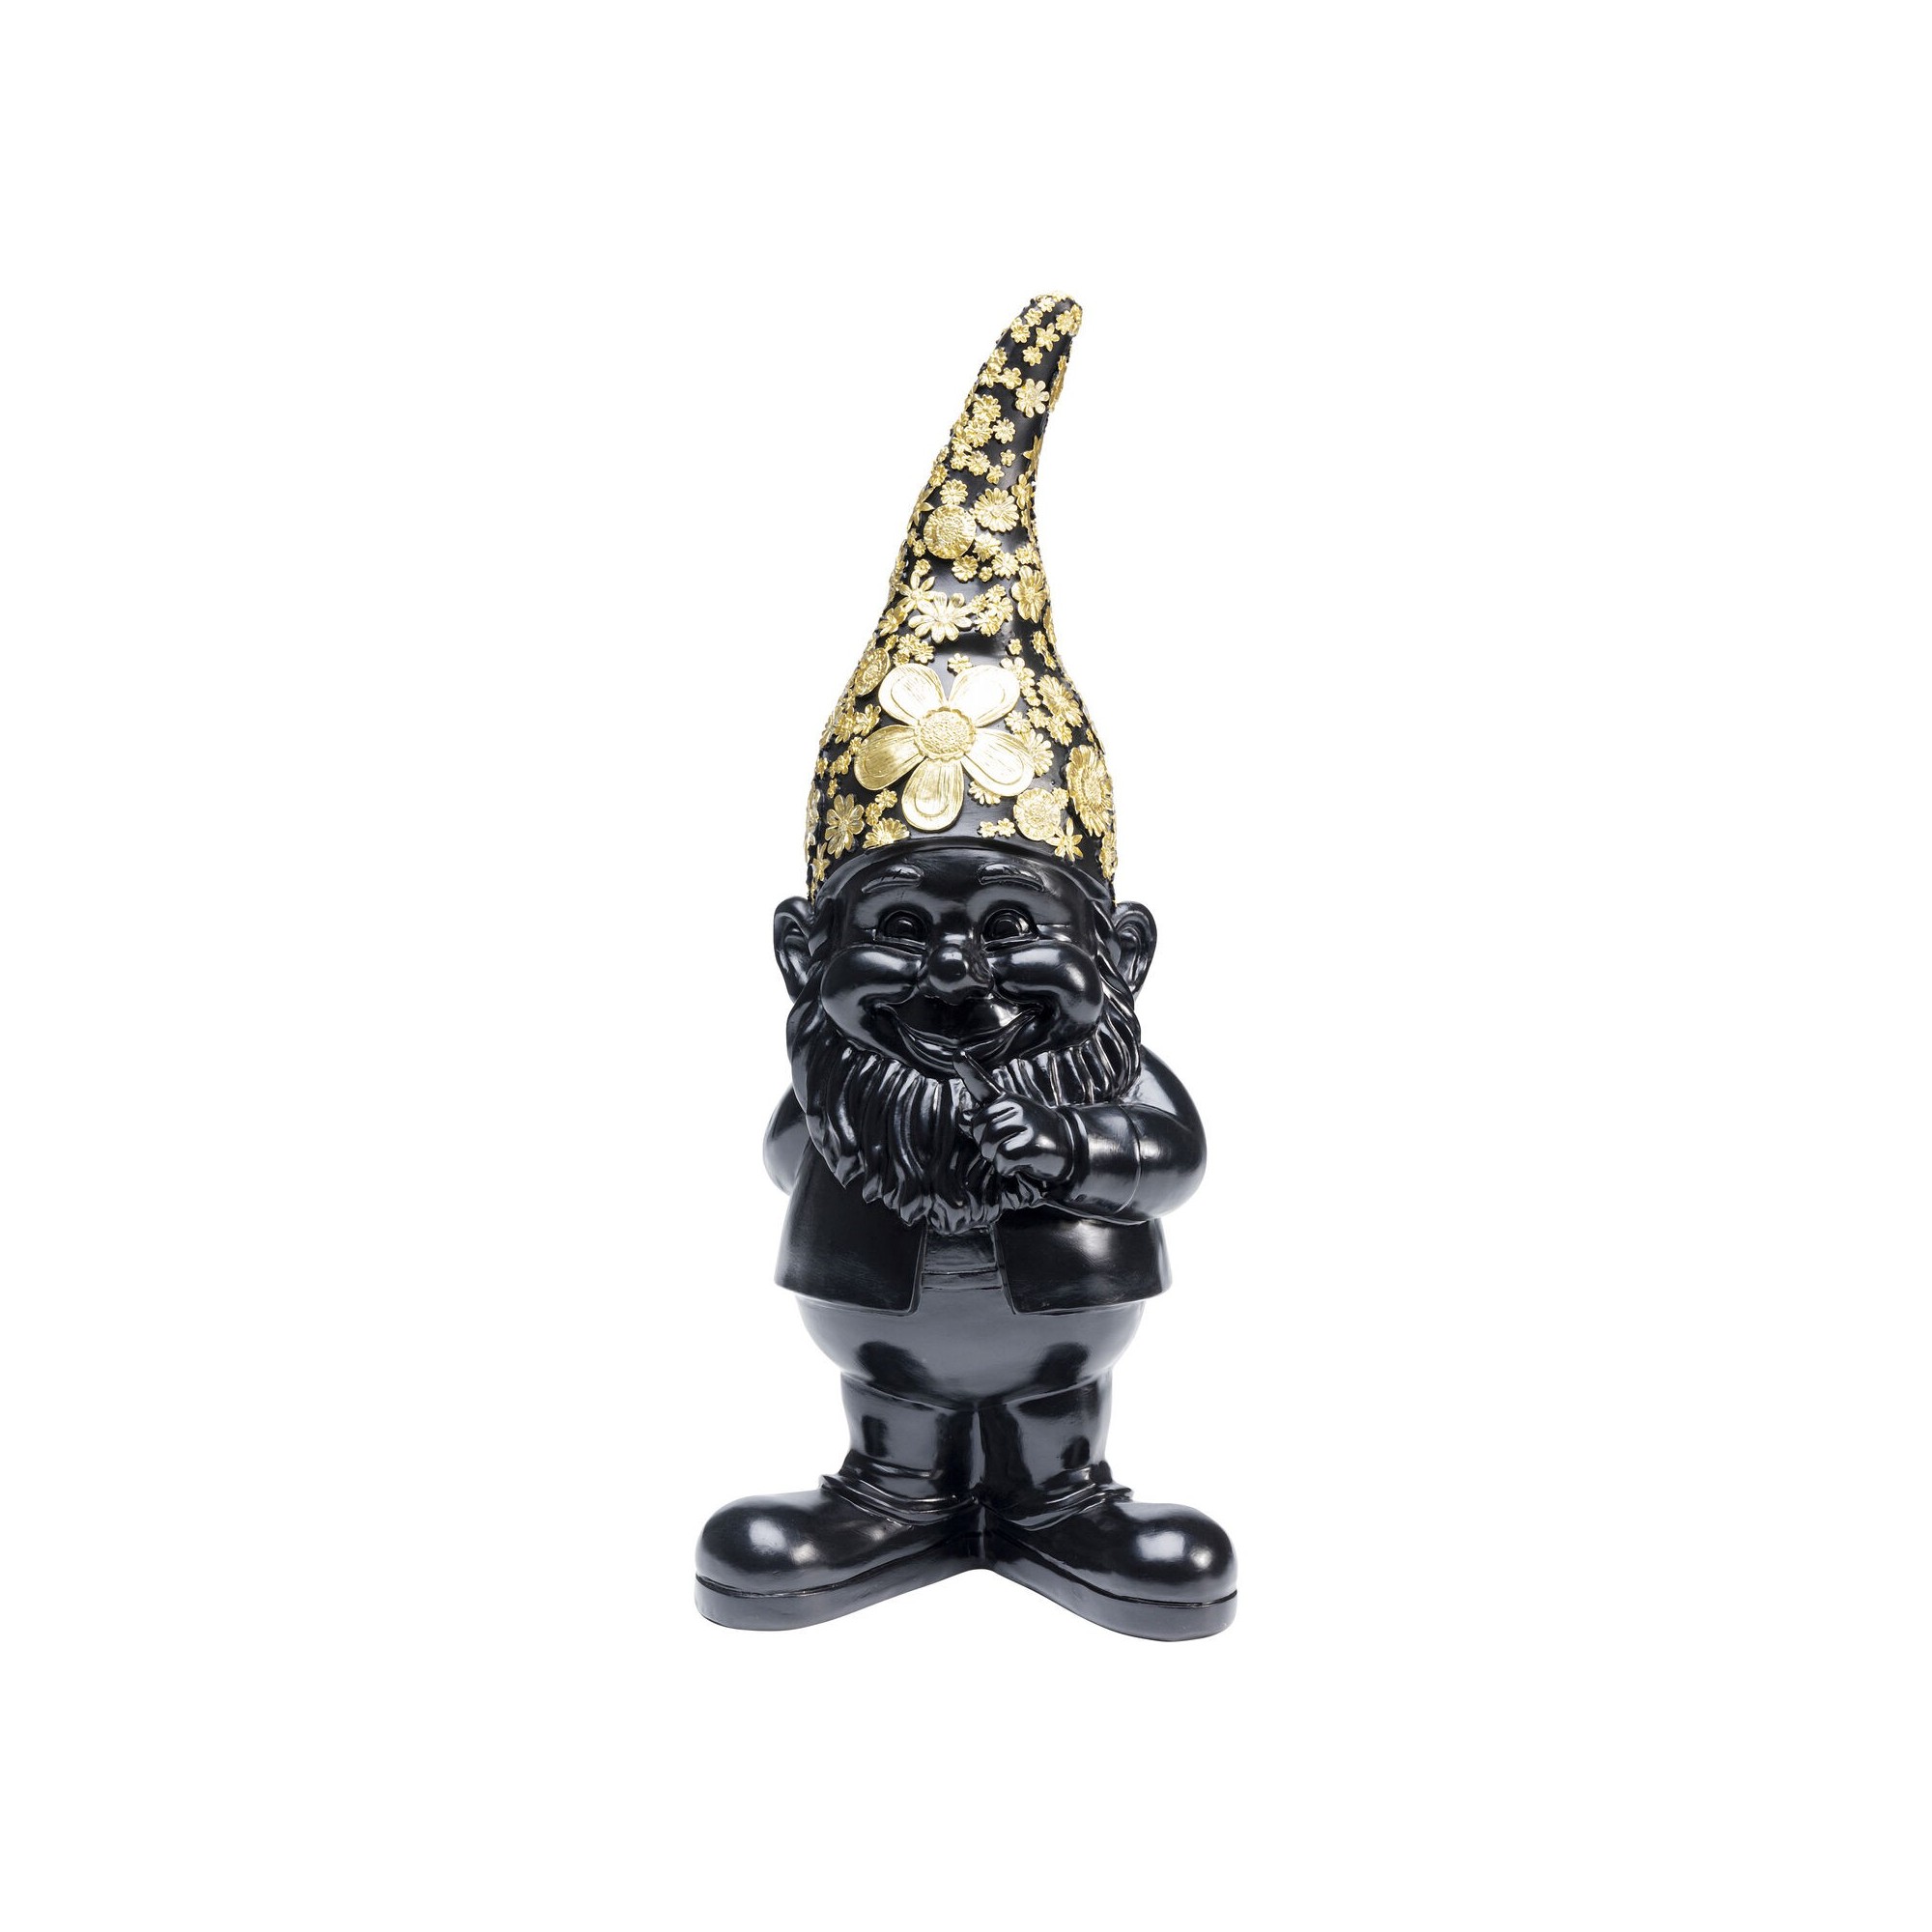 Figurine décorative Nain Standing noir-doré 45